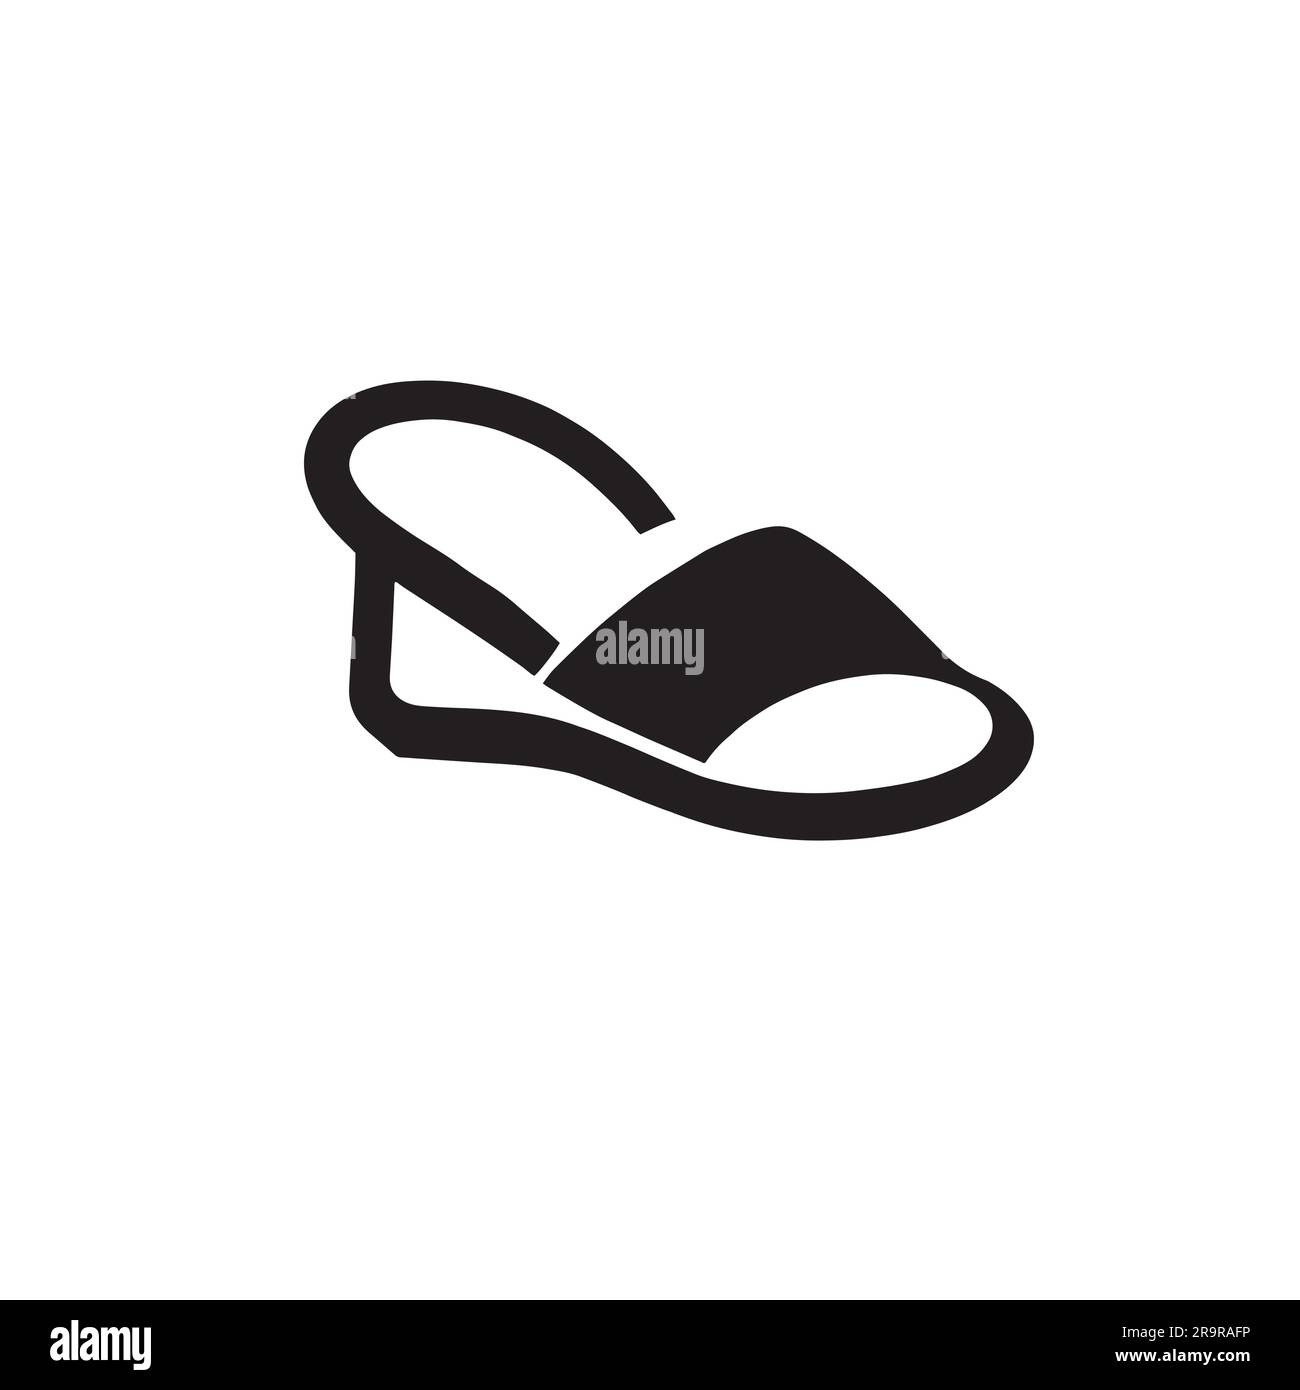 flip-flop logo illustration in black color Stock Vector